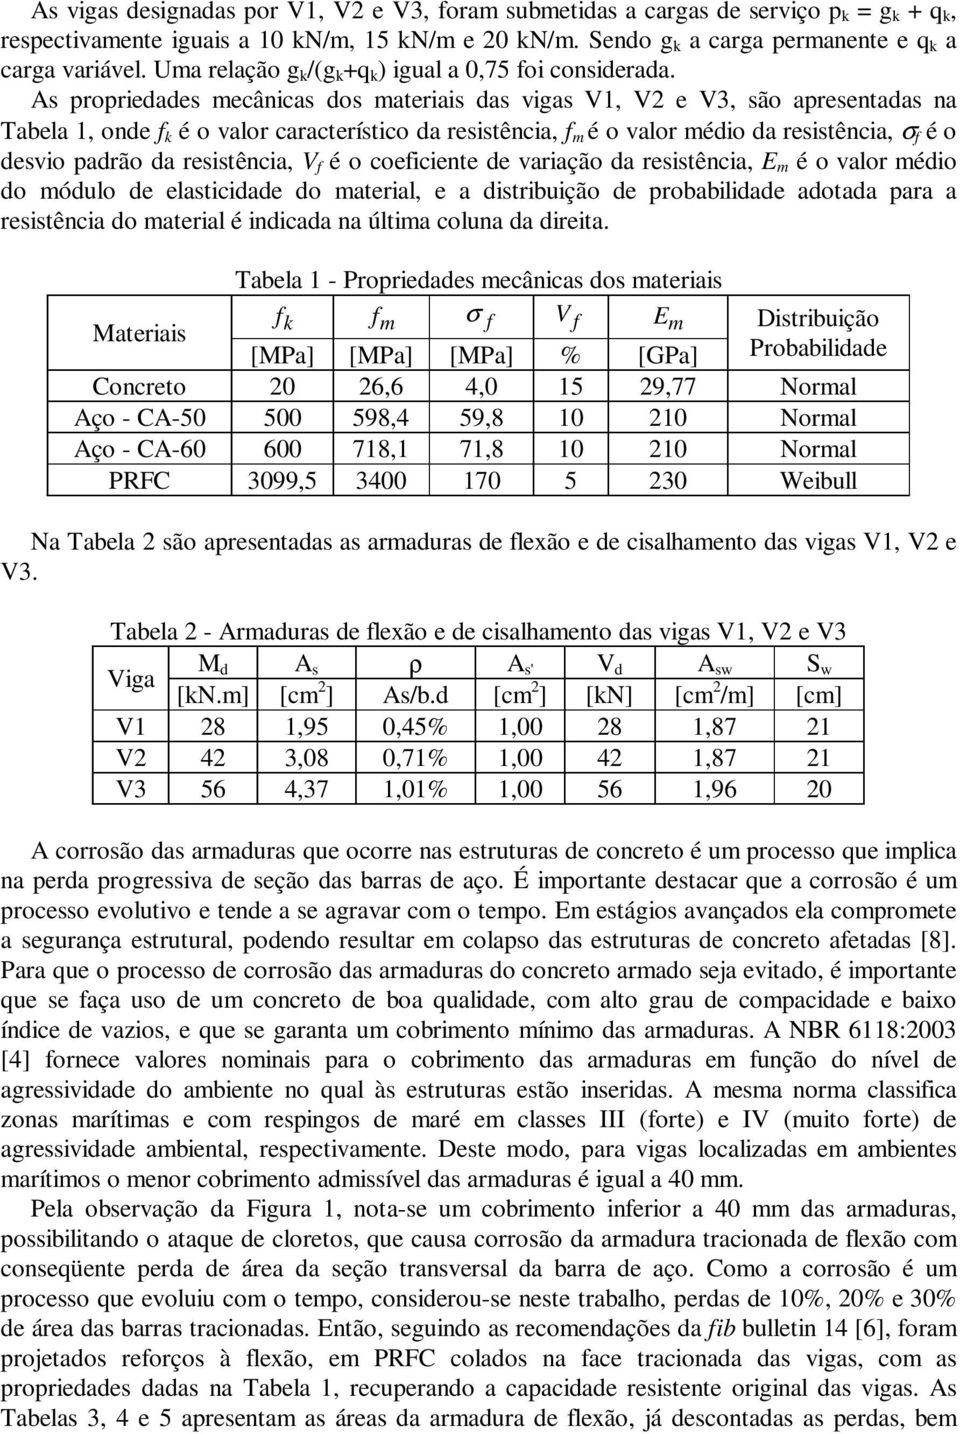 As propriedades mecânicas dos materiais das vigas V1, V2 e V3, são apresentadas na Tabela 1, onde f k é o valor característico da resistência, f m é o valor médio da resistência, σ f é o desvio